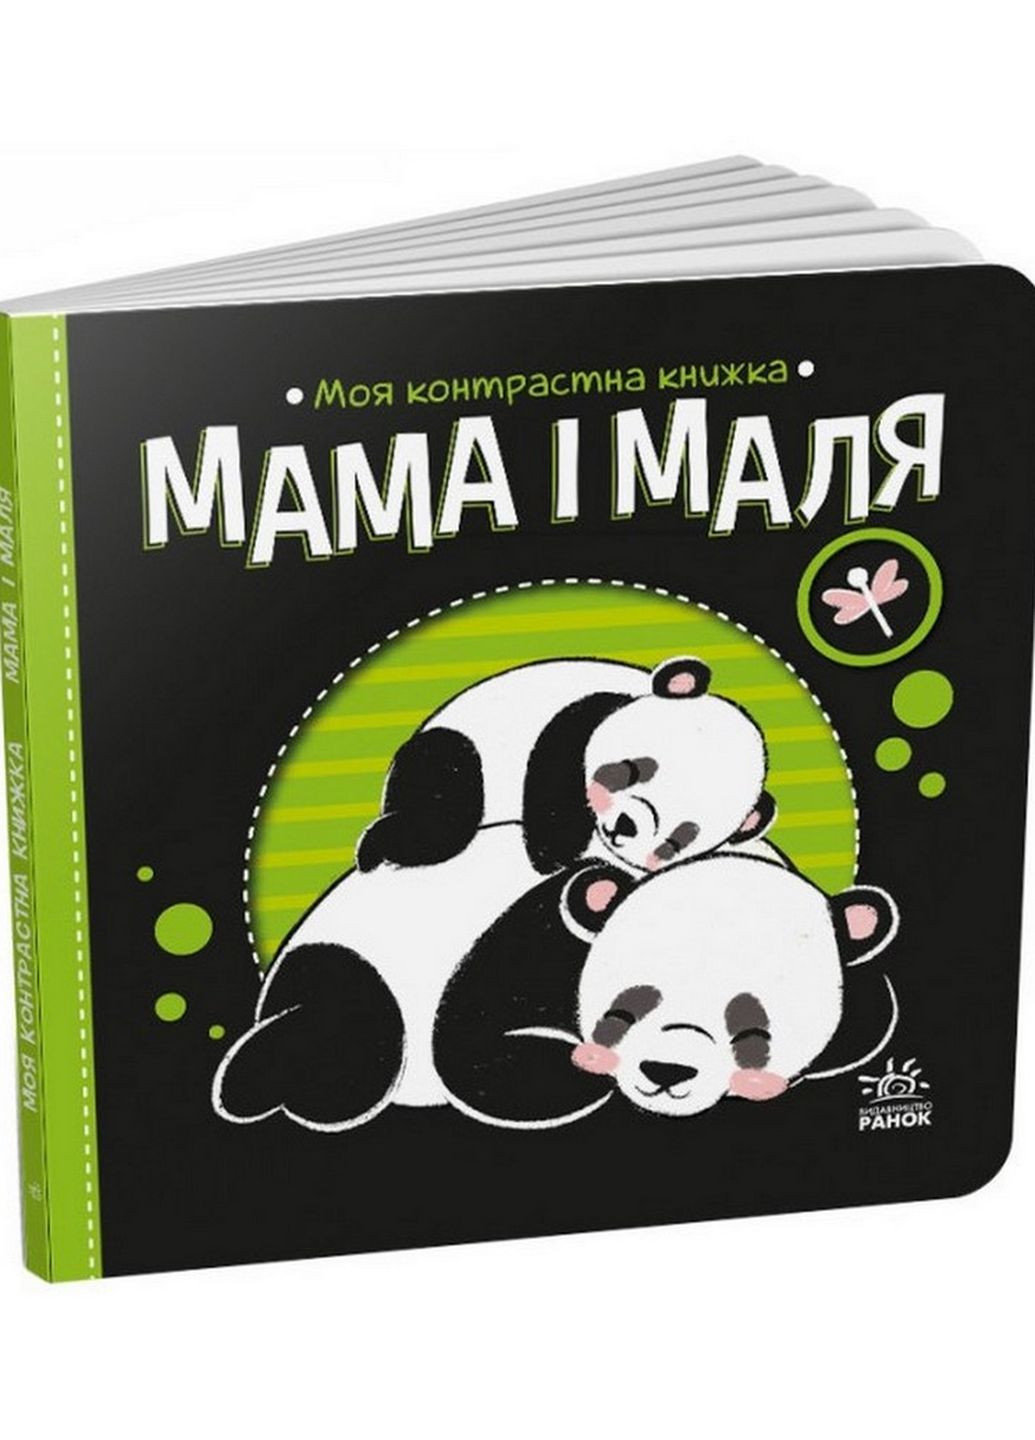 Моя контрастна книжка: "Мама та малюк" Ранок 1703004 від народження Ranok Creative (276776617)